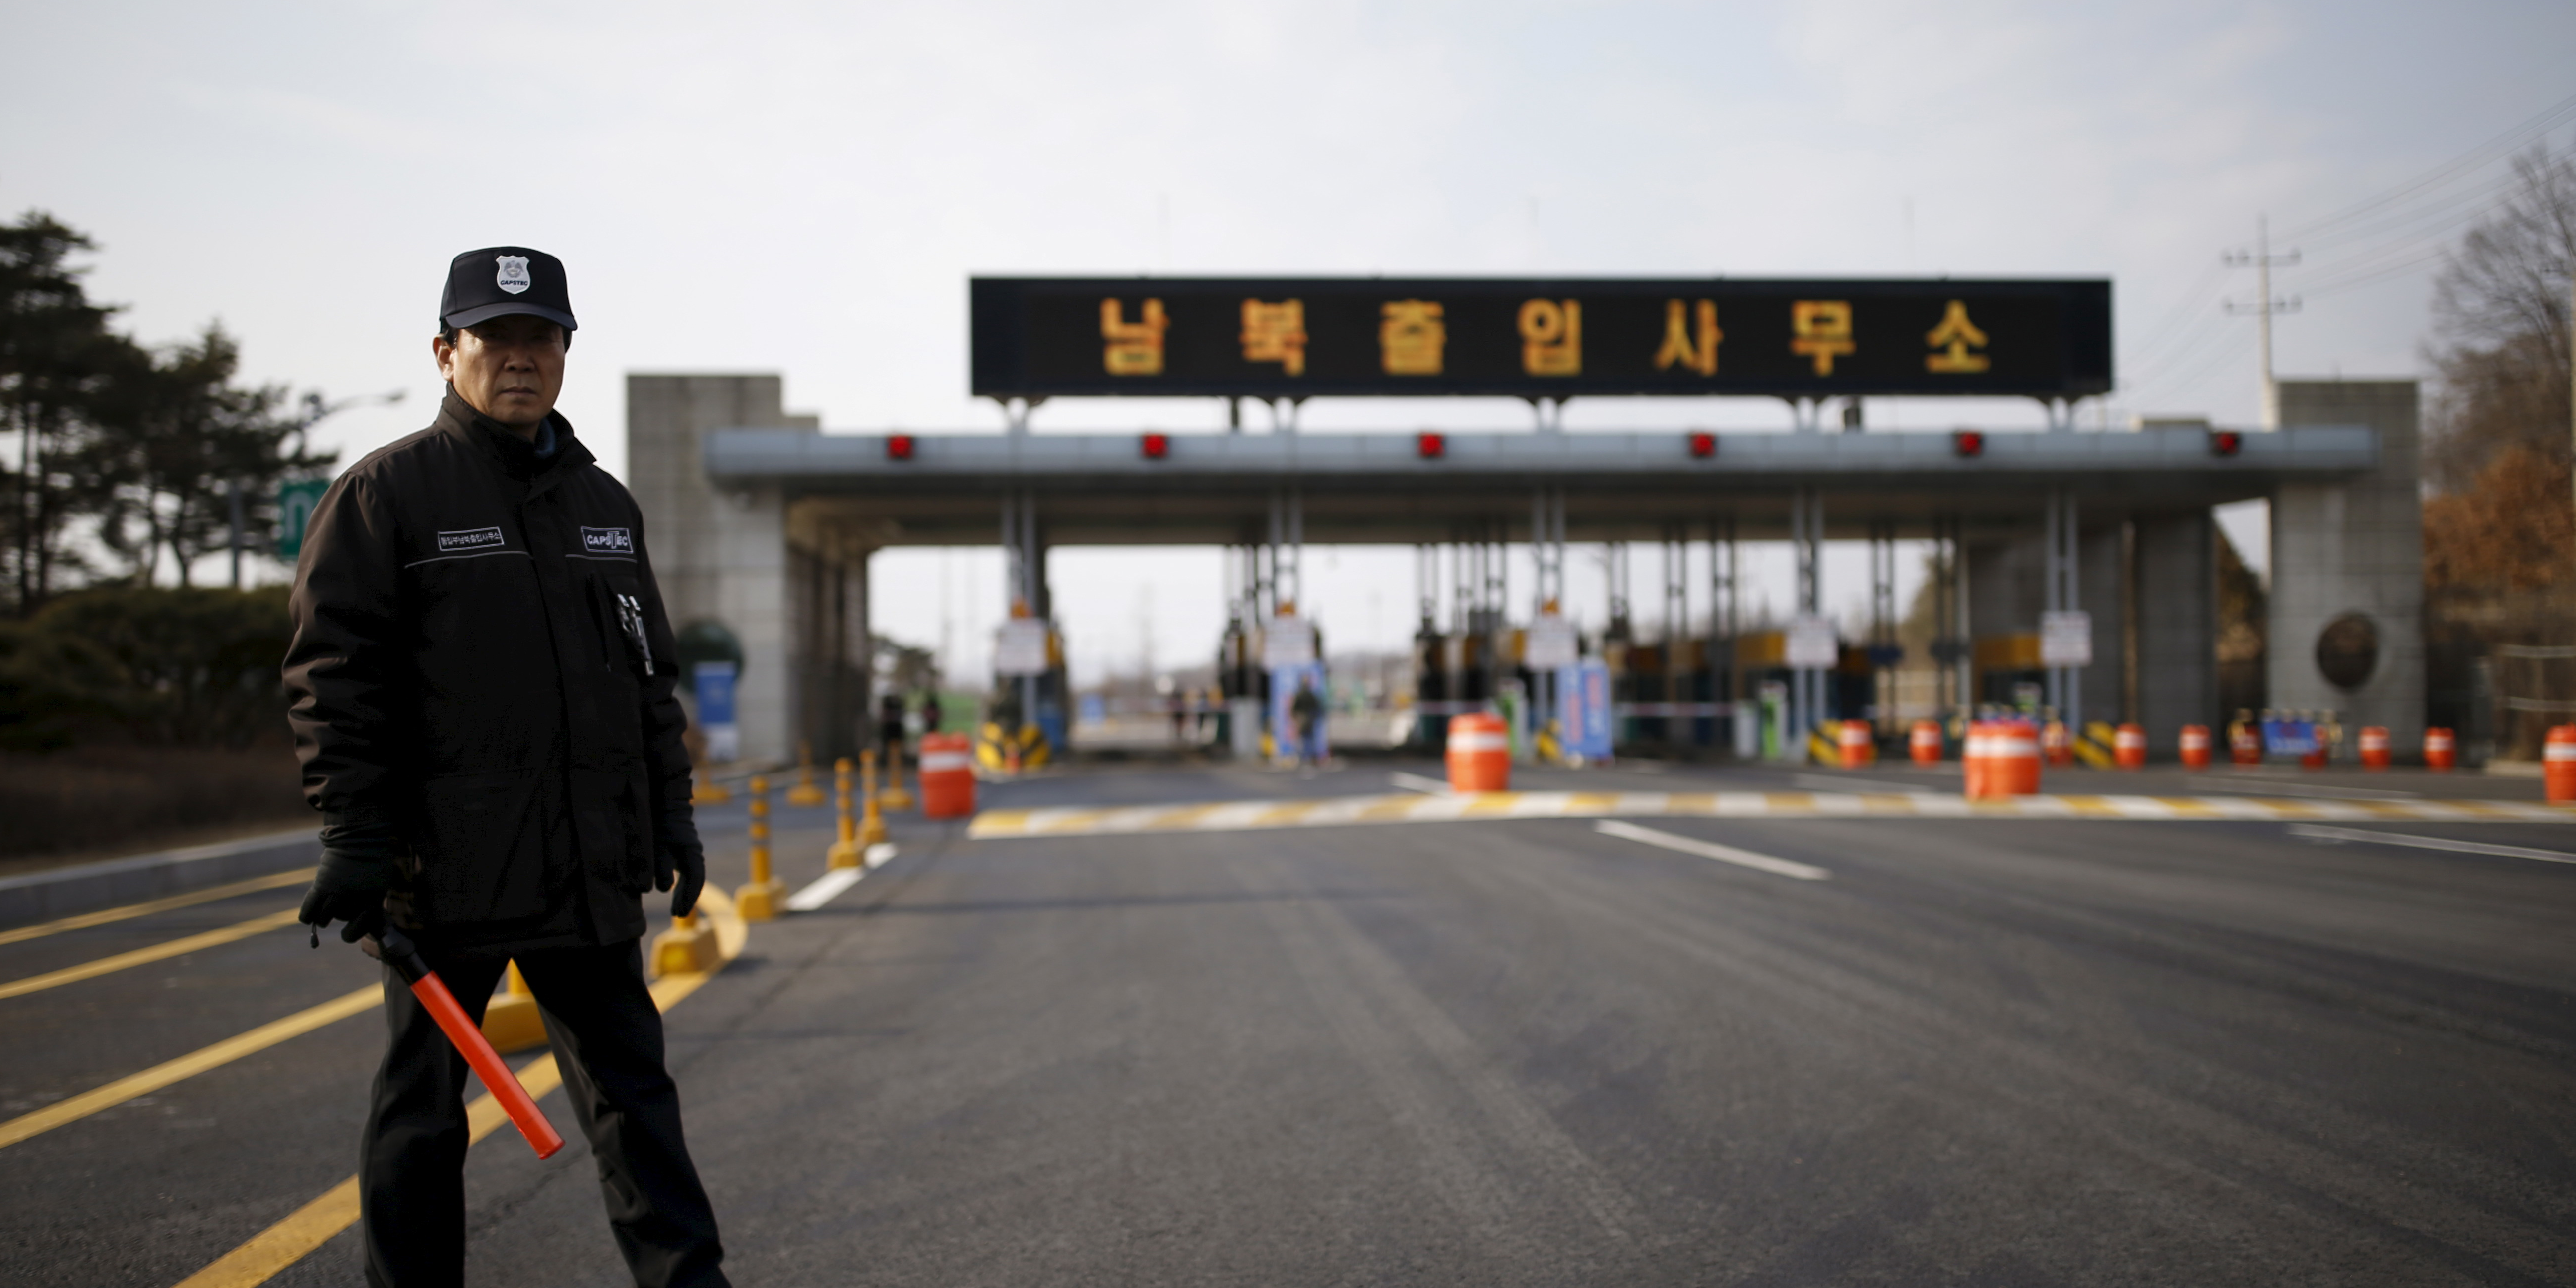 La fracture s'intensifie entre les deux Corées, Pyongyang abolit sa coopération économique avec Séoul